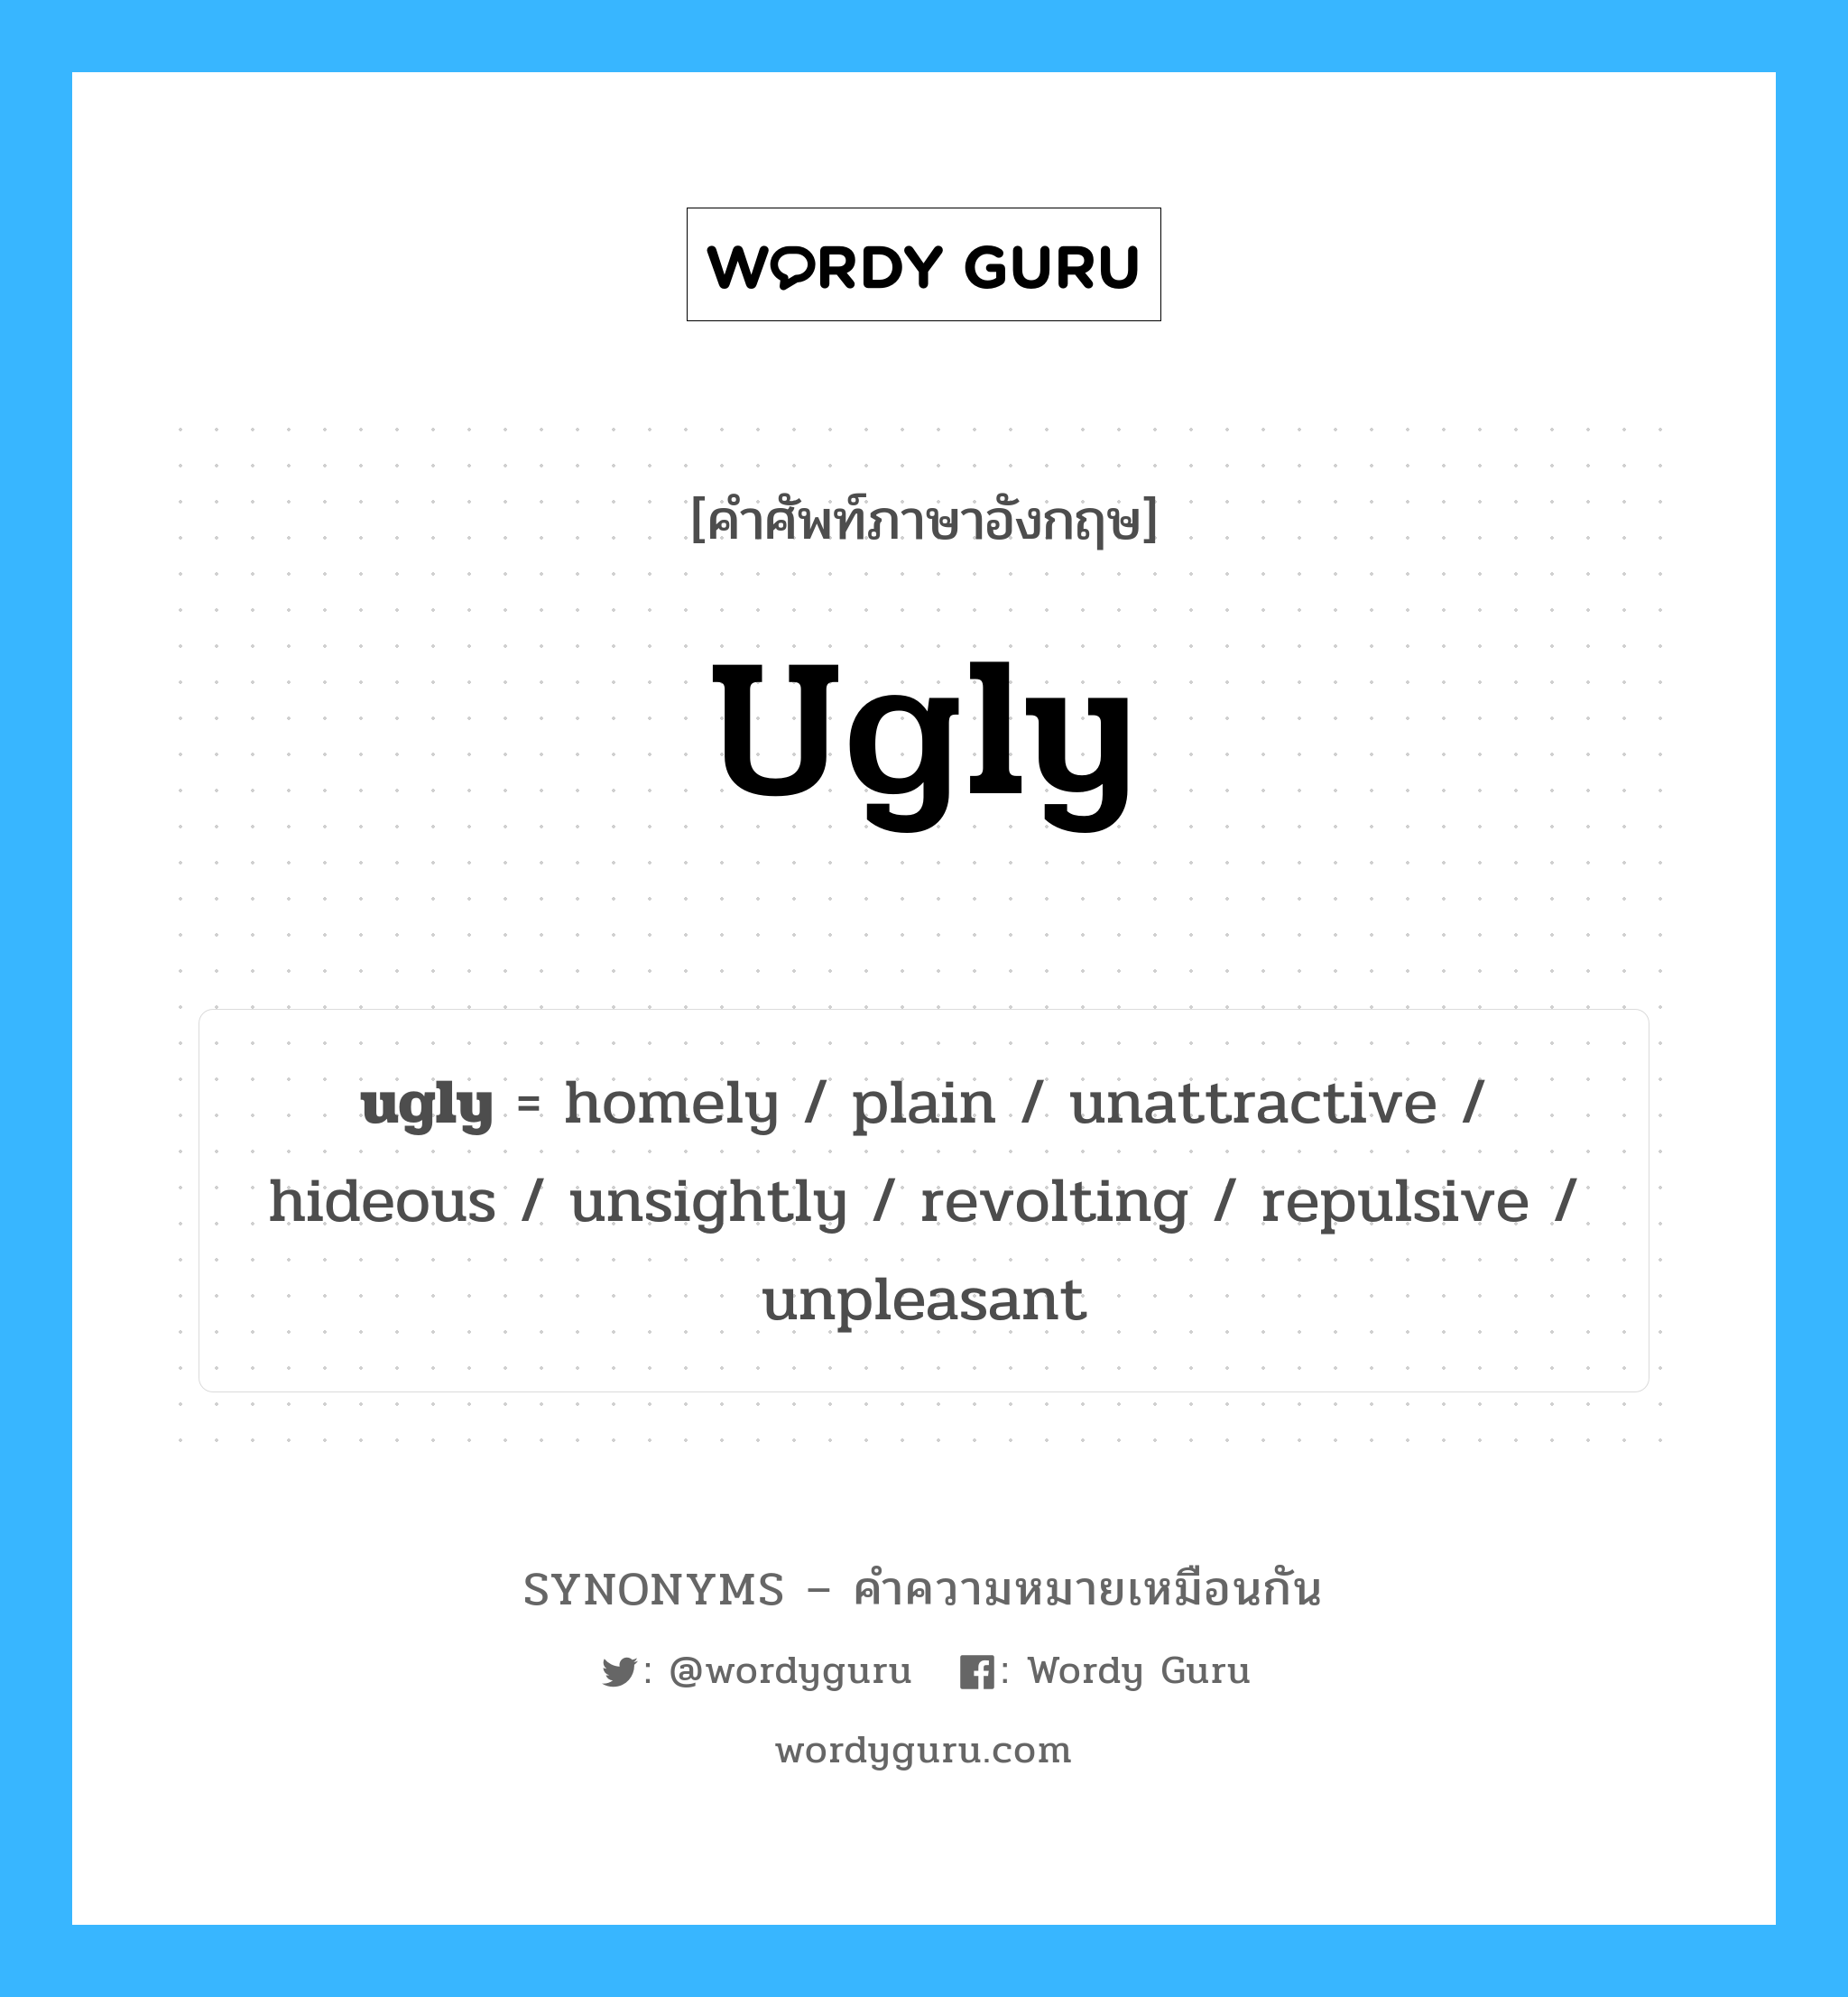 unpleasant เป็นหนึ่งใน mean และมีคำอื่น ๆ อีกดังนี้, คำศัพท์ภาษาอังกฤษ unpleasant ความหมายคล้ายกันกับ ugly แปลว่า ไม่พึงประสงค์ หมวด ugly